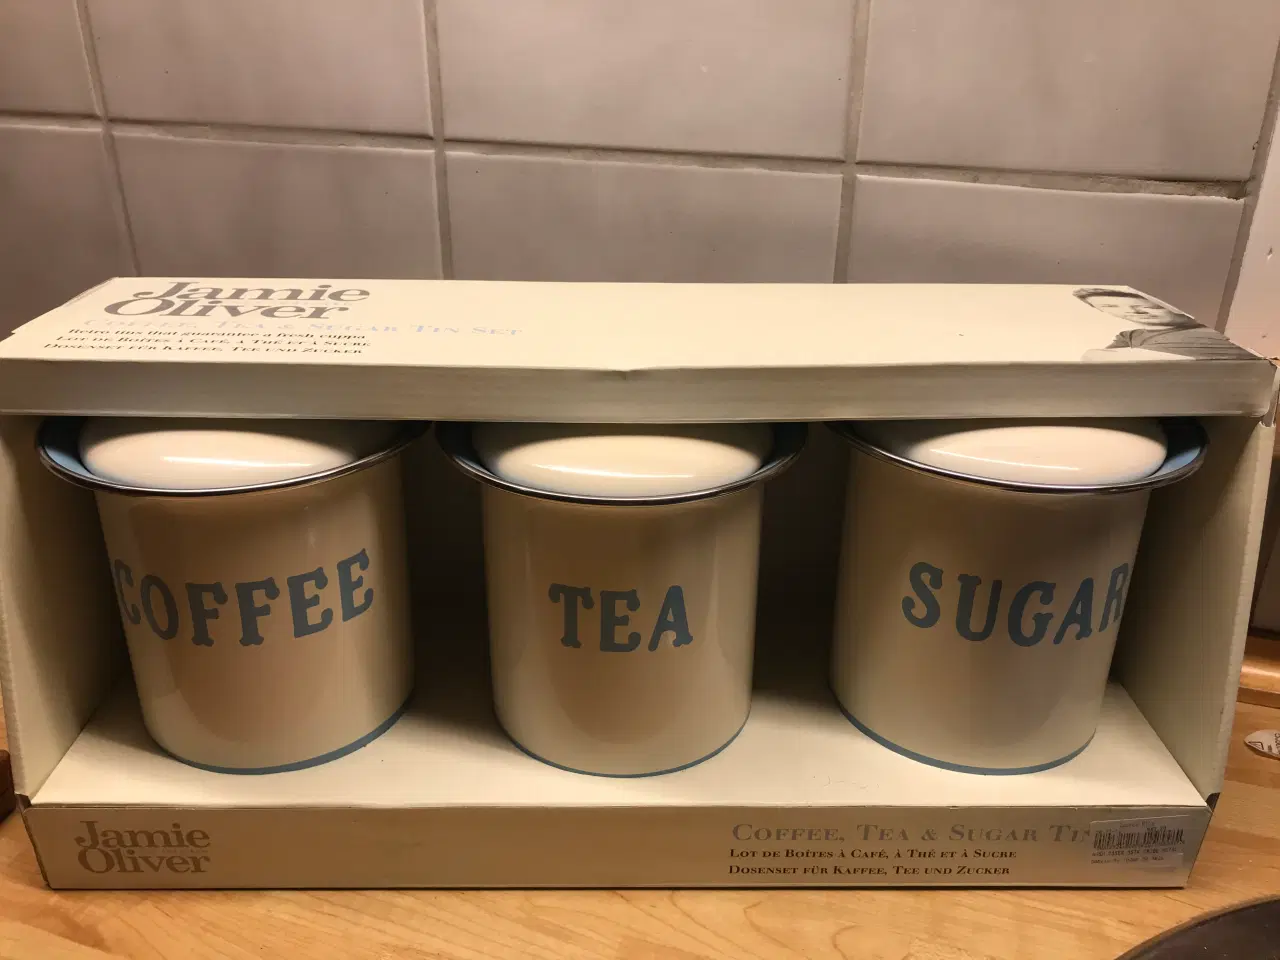 Billede 2 - Jamie Oliver - dåser, kaffe, sukker, te, småkager